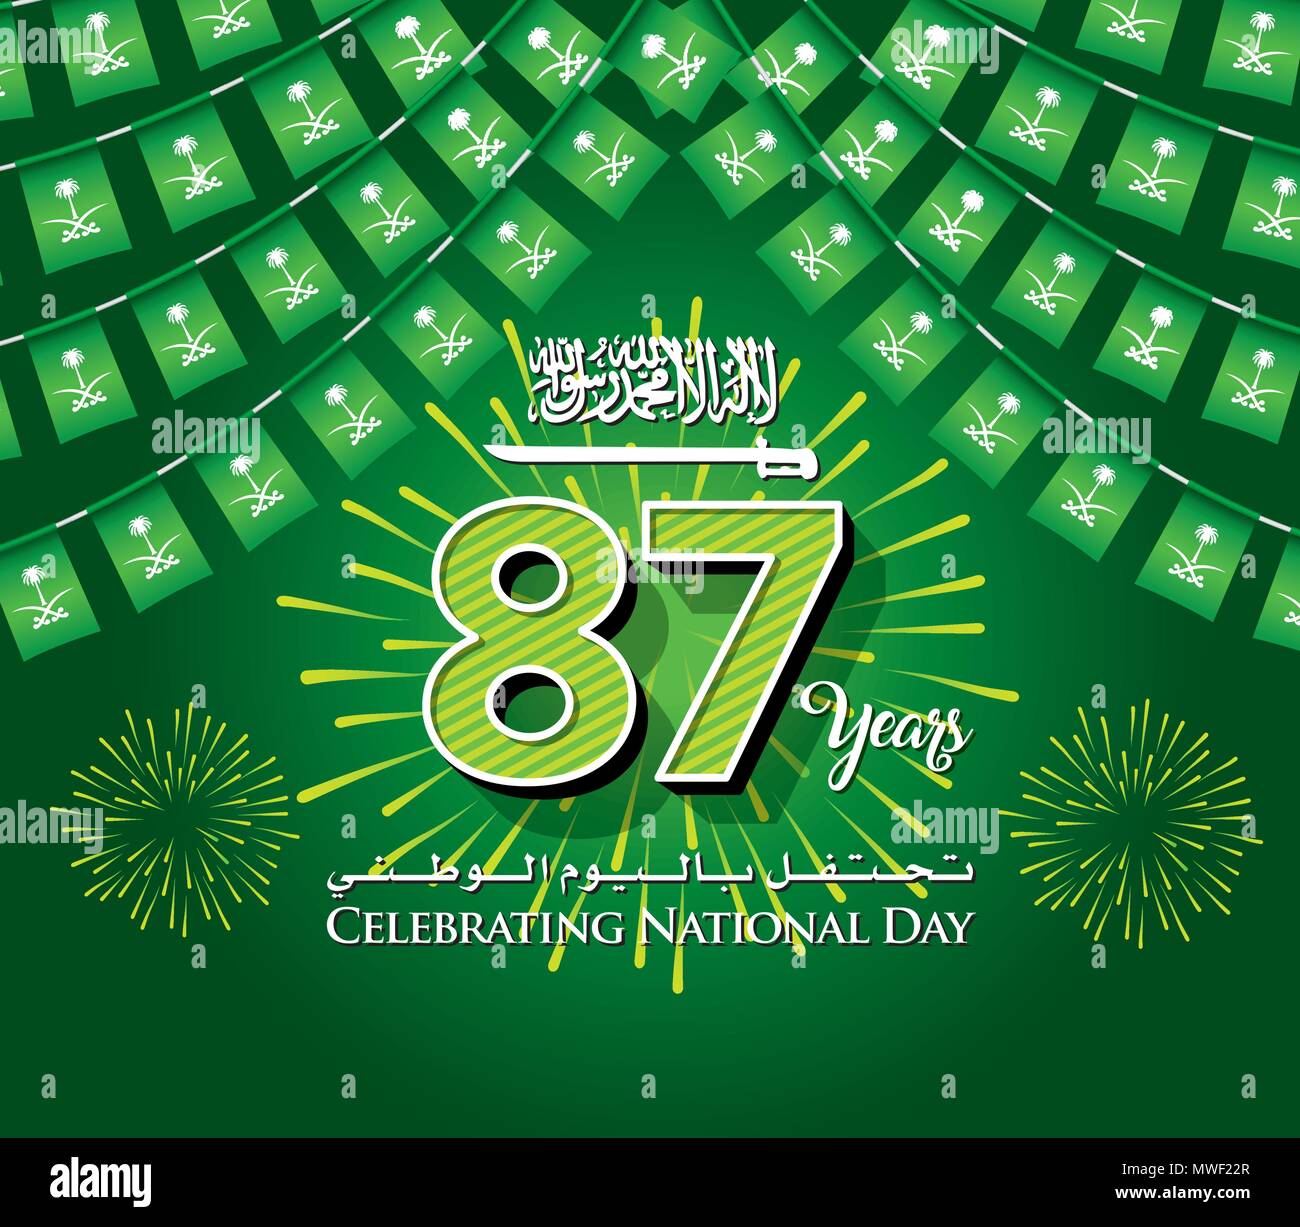 Arabia Saudita 87 Día Nacional del Fondo con guirnalda de banderas, colgando Bunting banderas para celebración de Banner, una inscripción en árabe e inglés "Celebr Ilustración del Vector